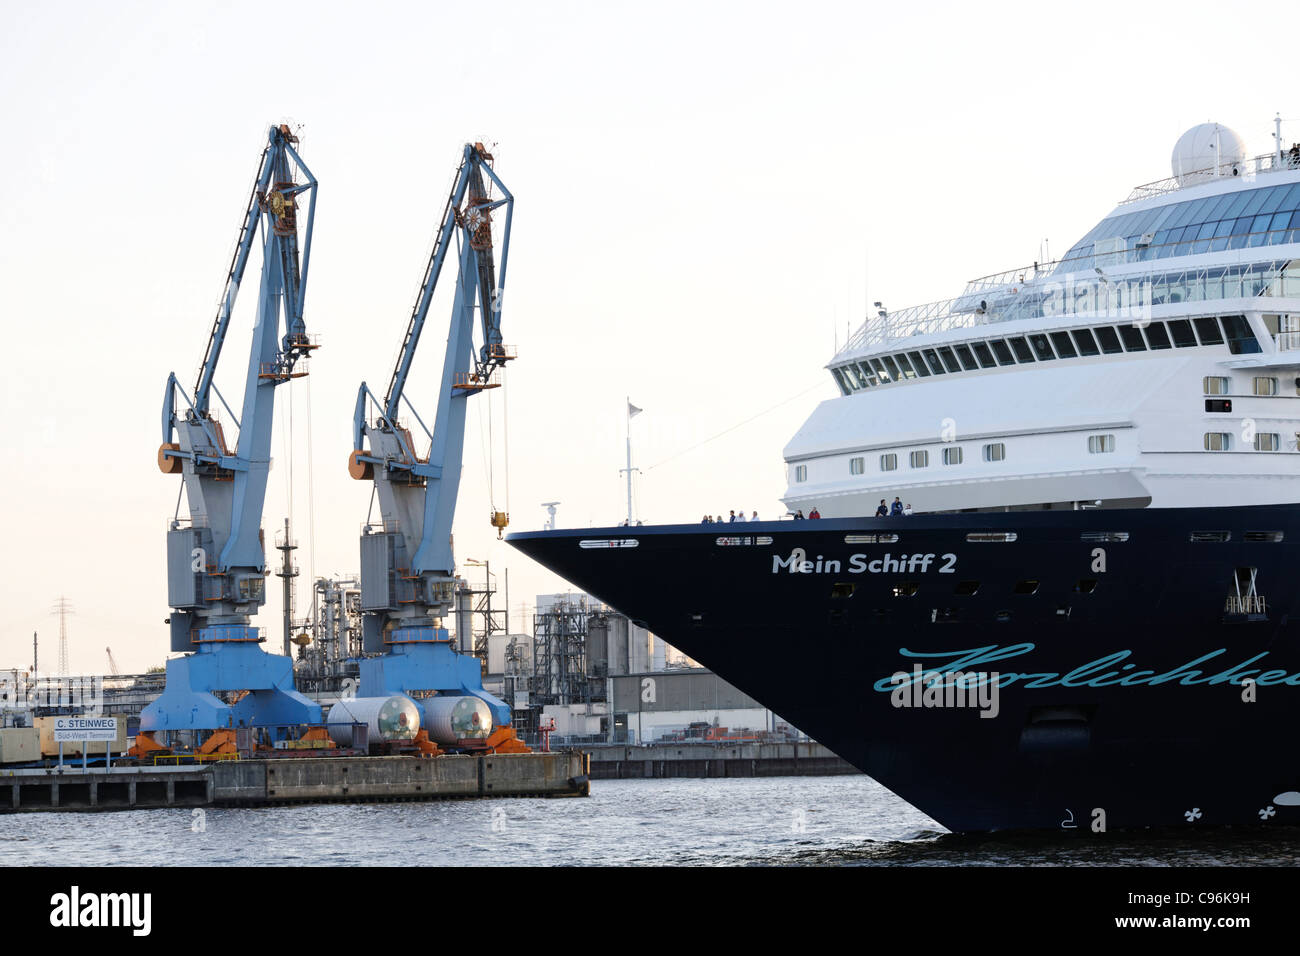 Cruise ship, Mein Schiff 2, in the port of Hamburg, Hamburg, Germany, Europe Stock Photo